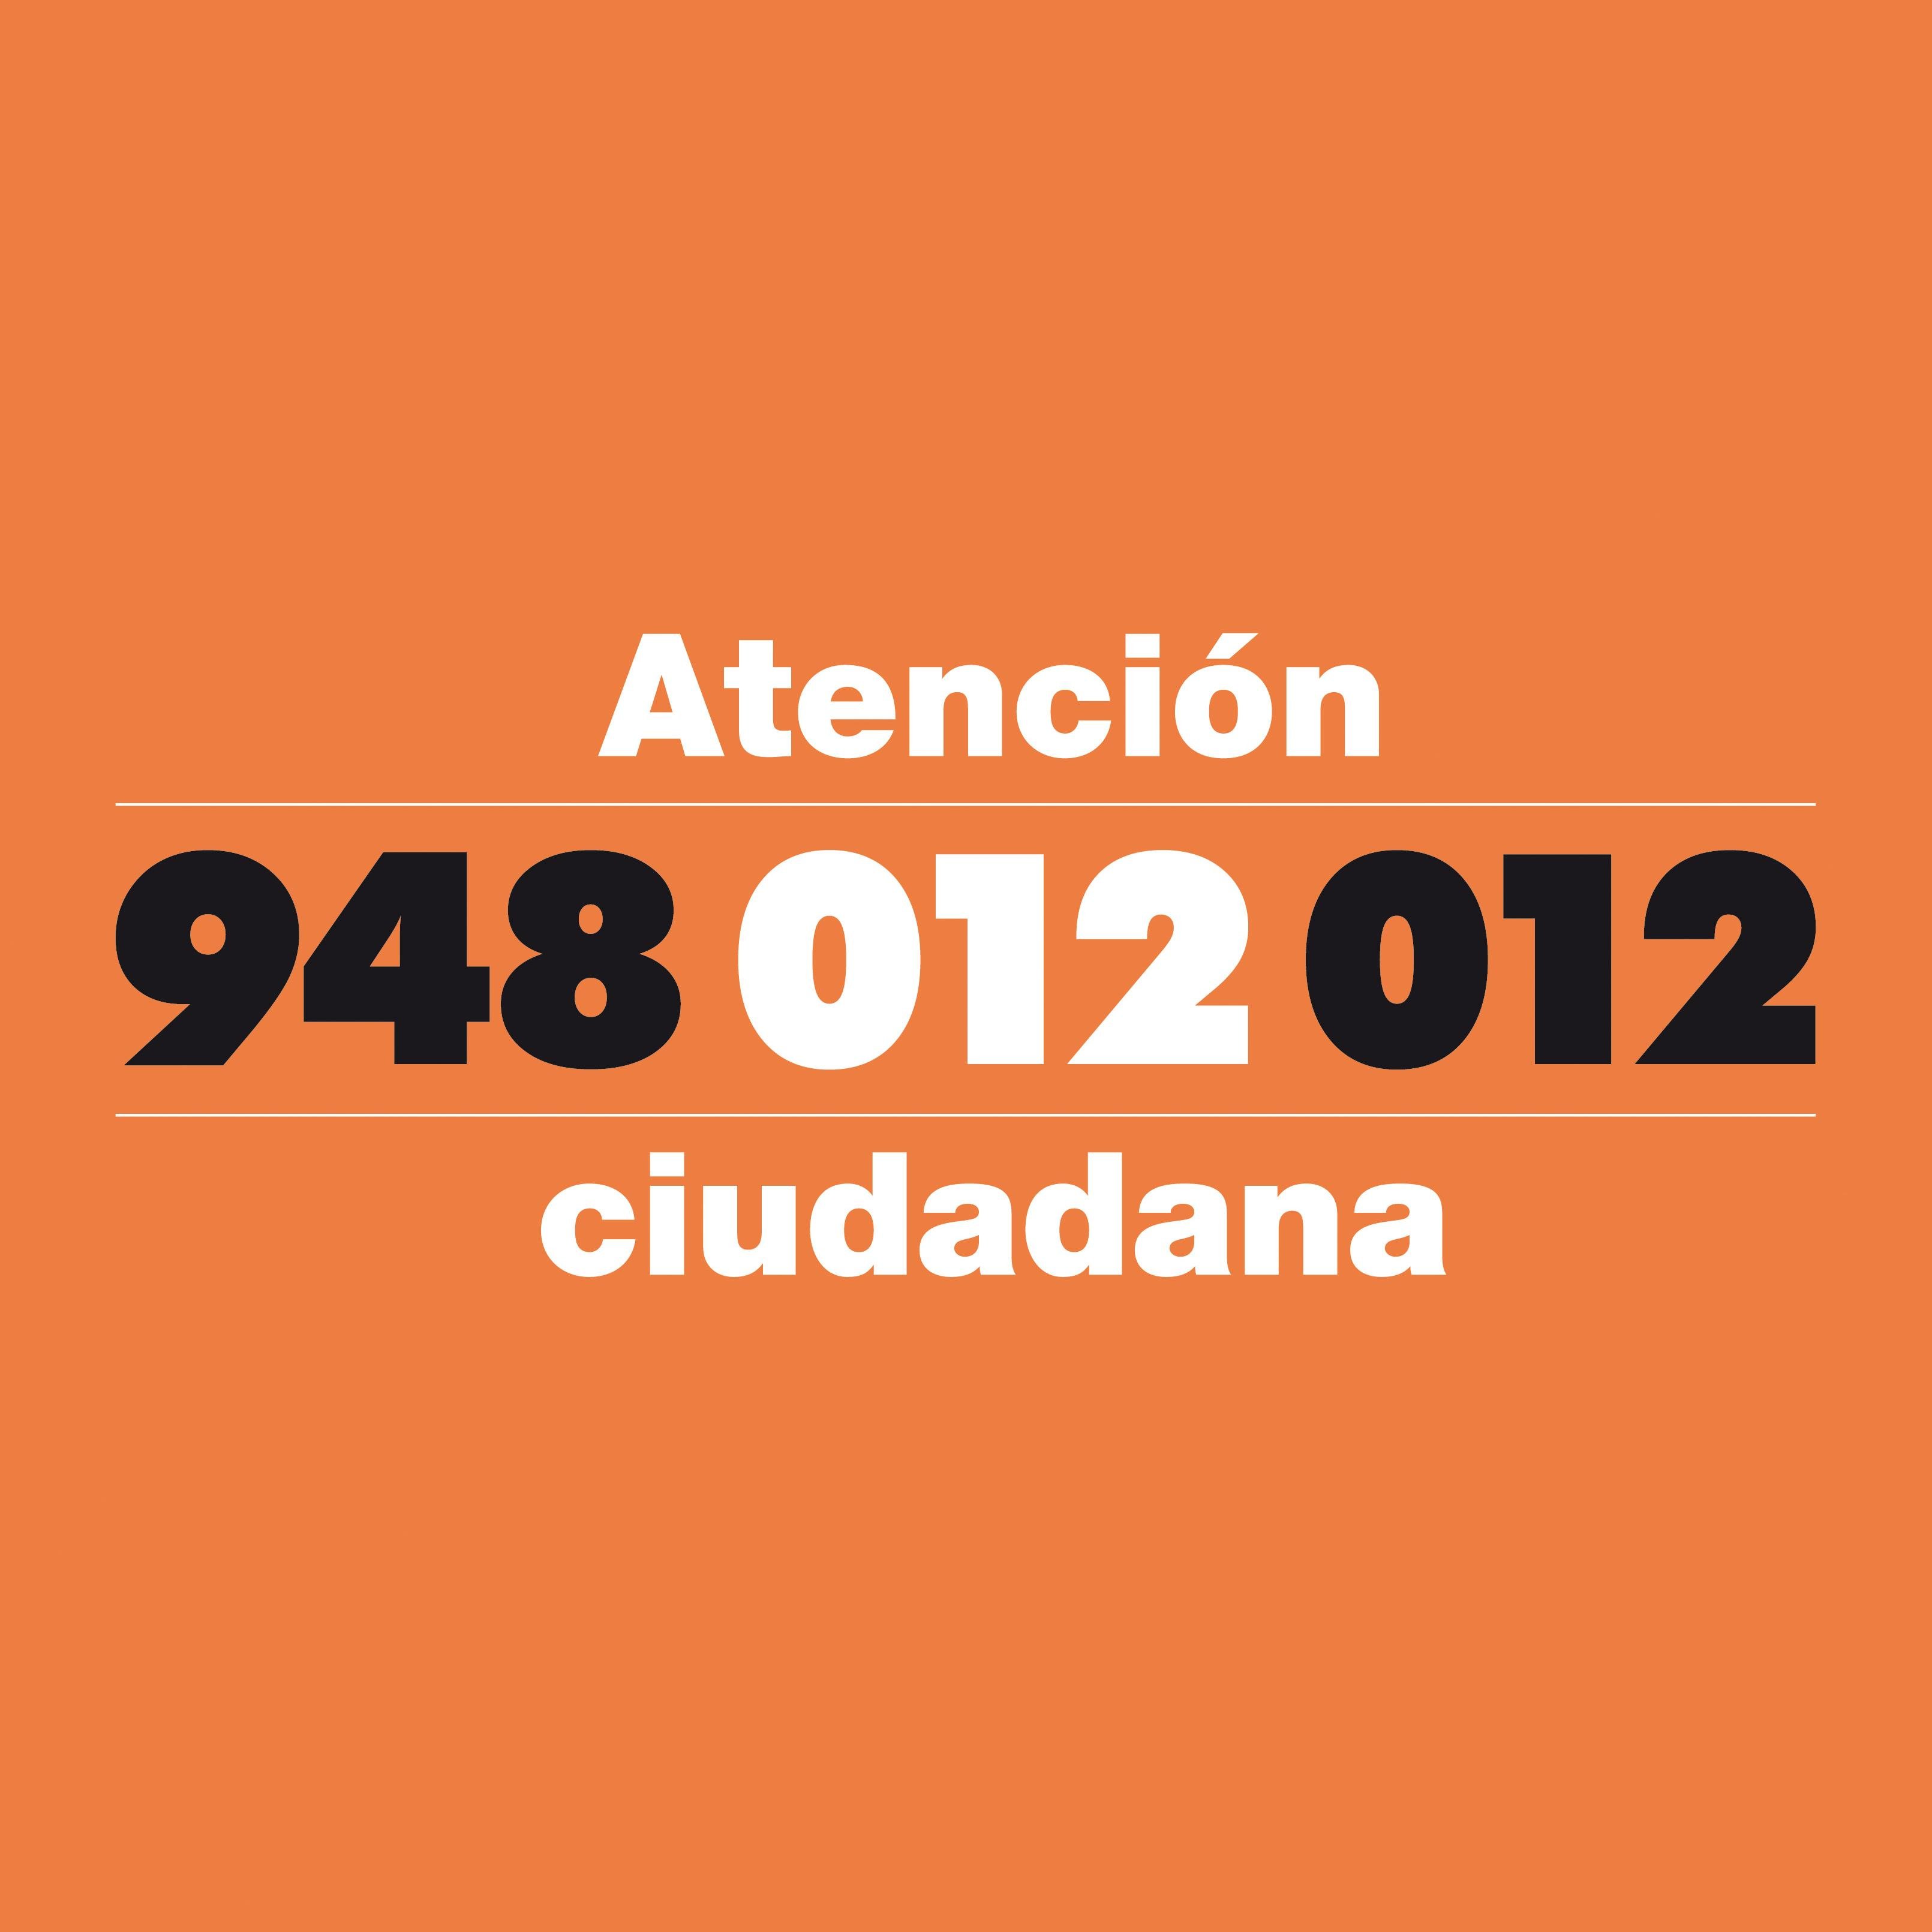 Teléfono 012: facilita información de entidades, trámites y convocatorias municipales, actividades de ocio. Trámites, citas e inscripciones en Navarra.